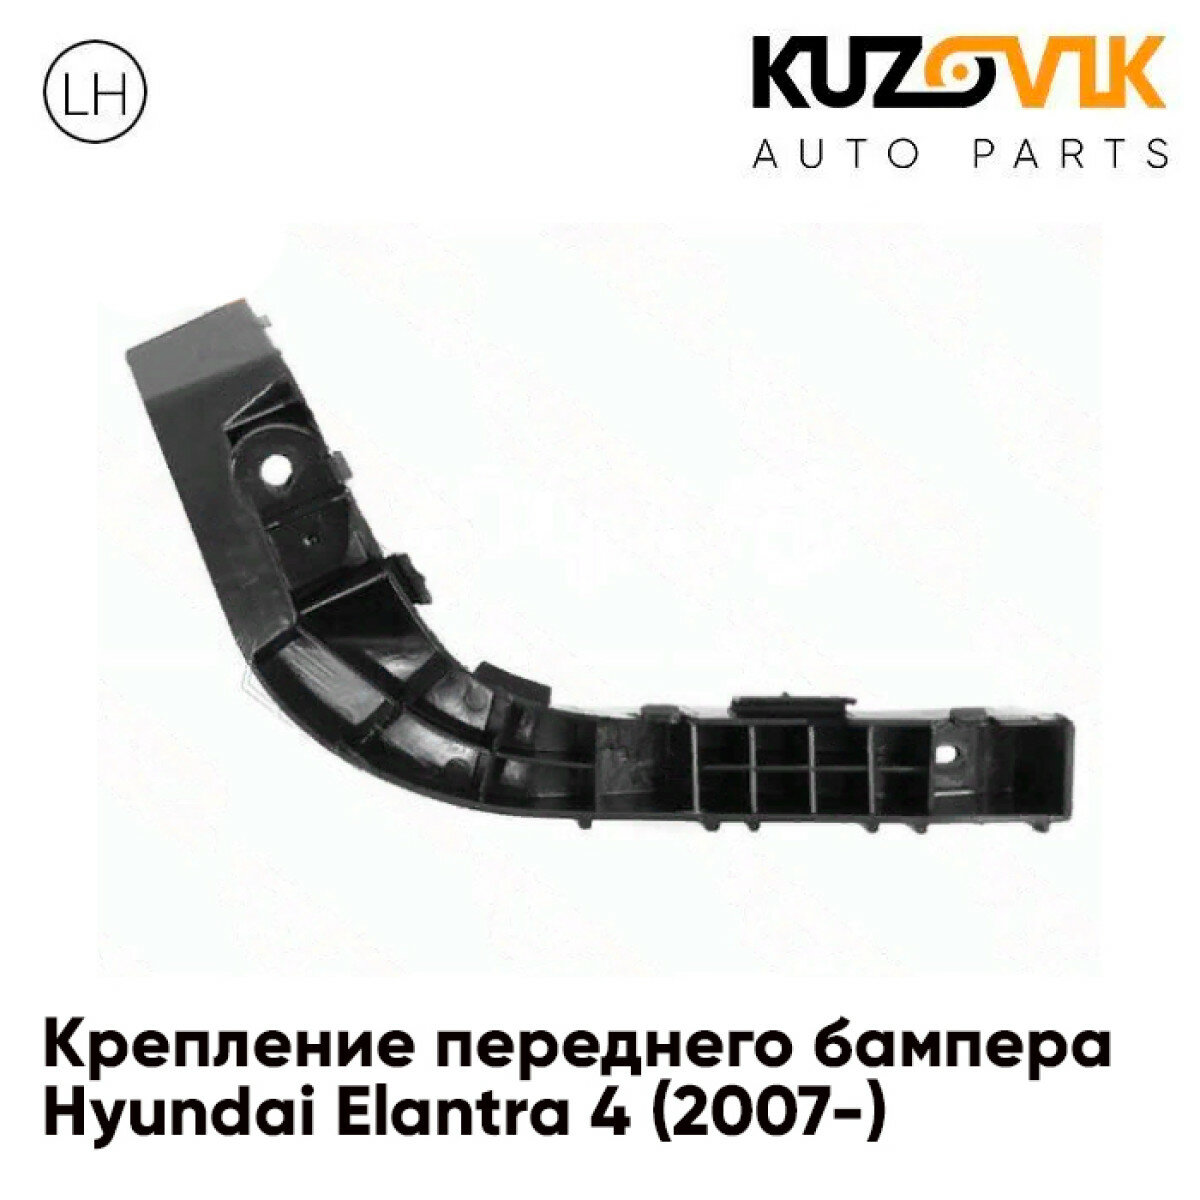 Крепление переднего бампера левое Hyundai Elantra 4 (2007-)